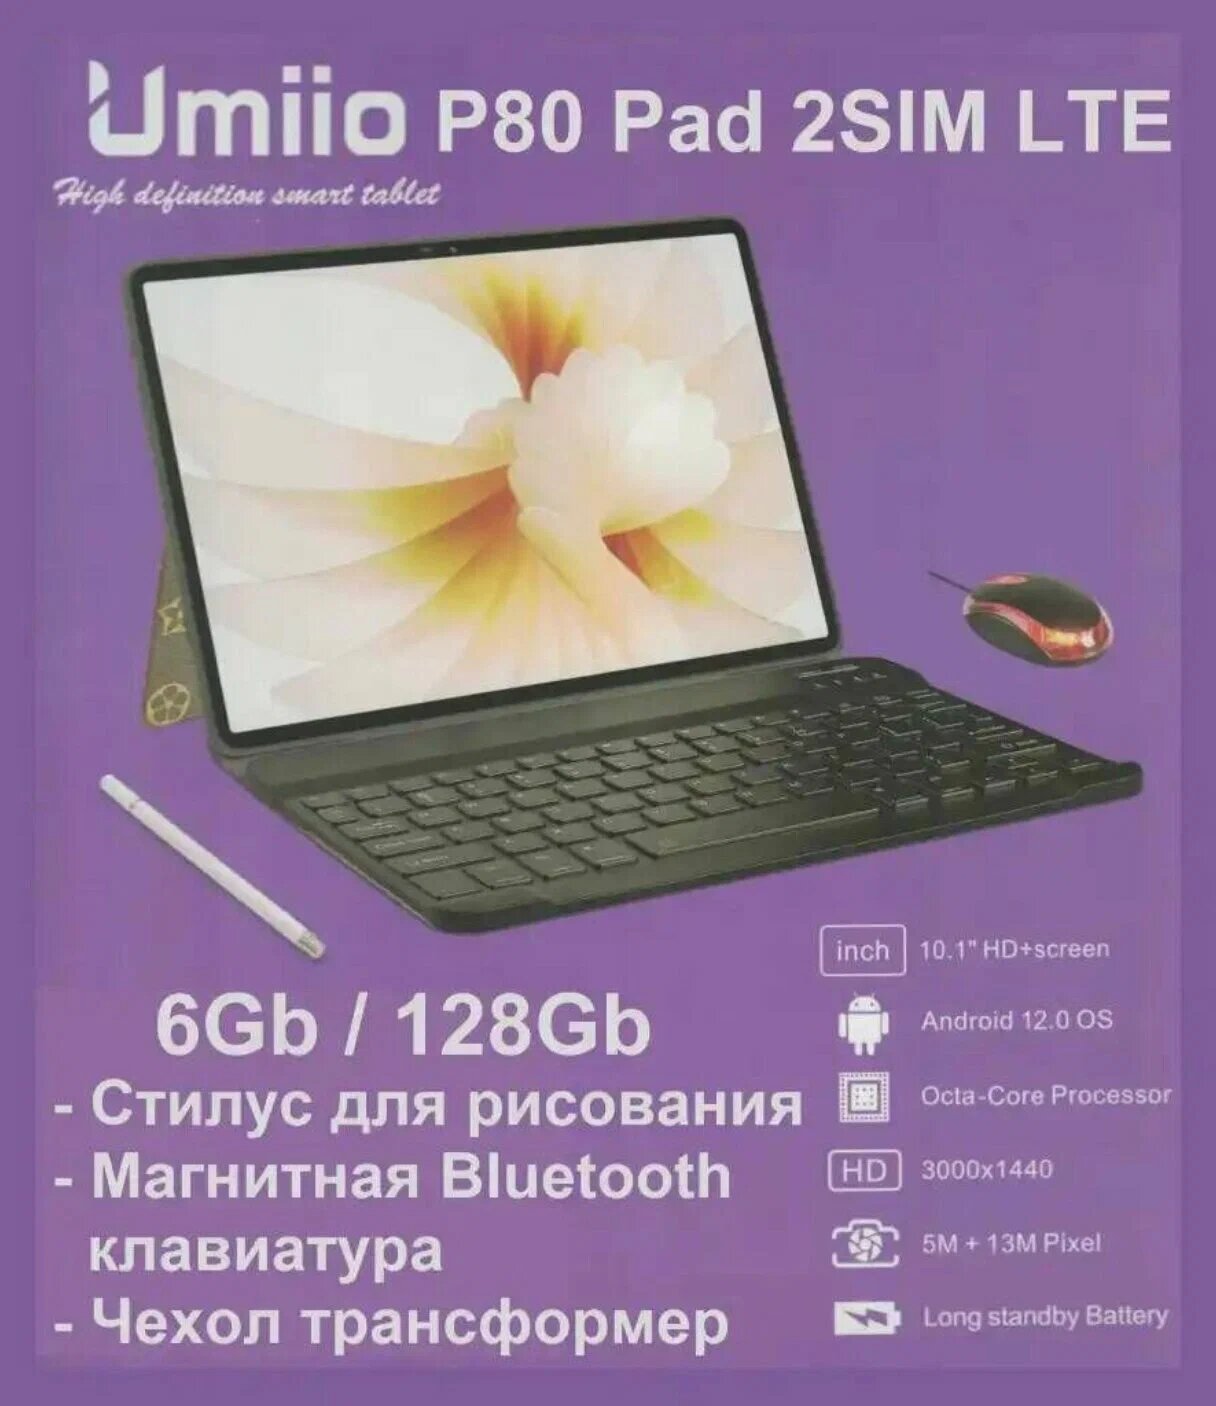 Планшет UMIIO P80 Pad с клавиатурой, стилусом, мышкой и защитным чехлом цвет серый.